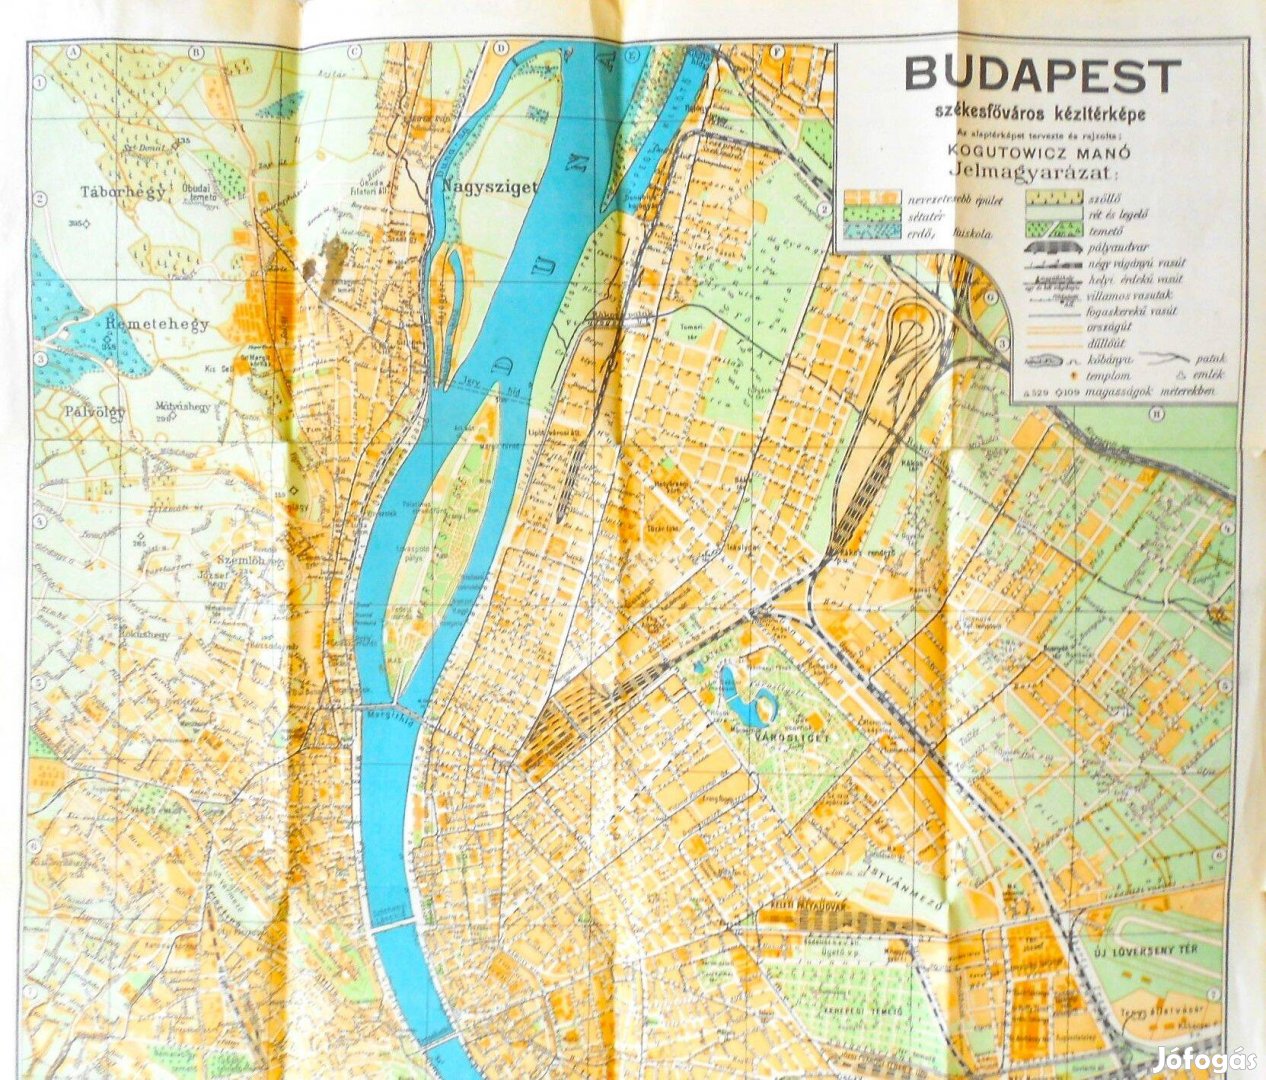 Budapest Székesfőváros kézitérkép 1930-as évek utcajegyzékkel